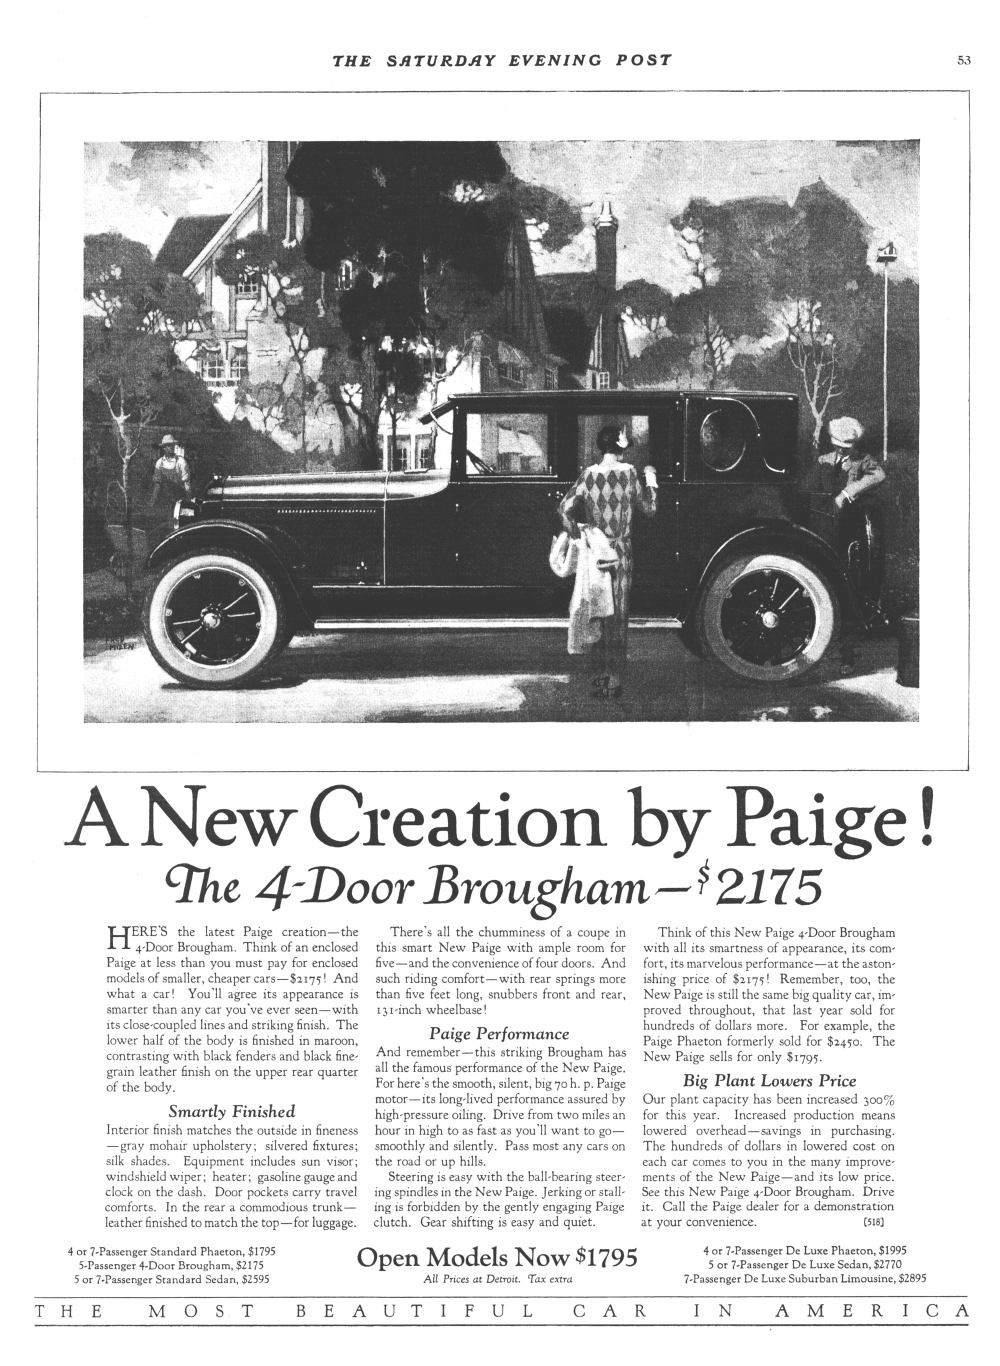 1924 Paige 4-door Brougham